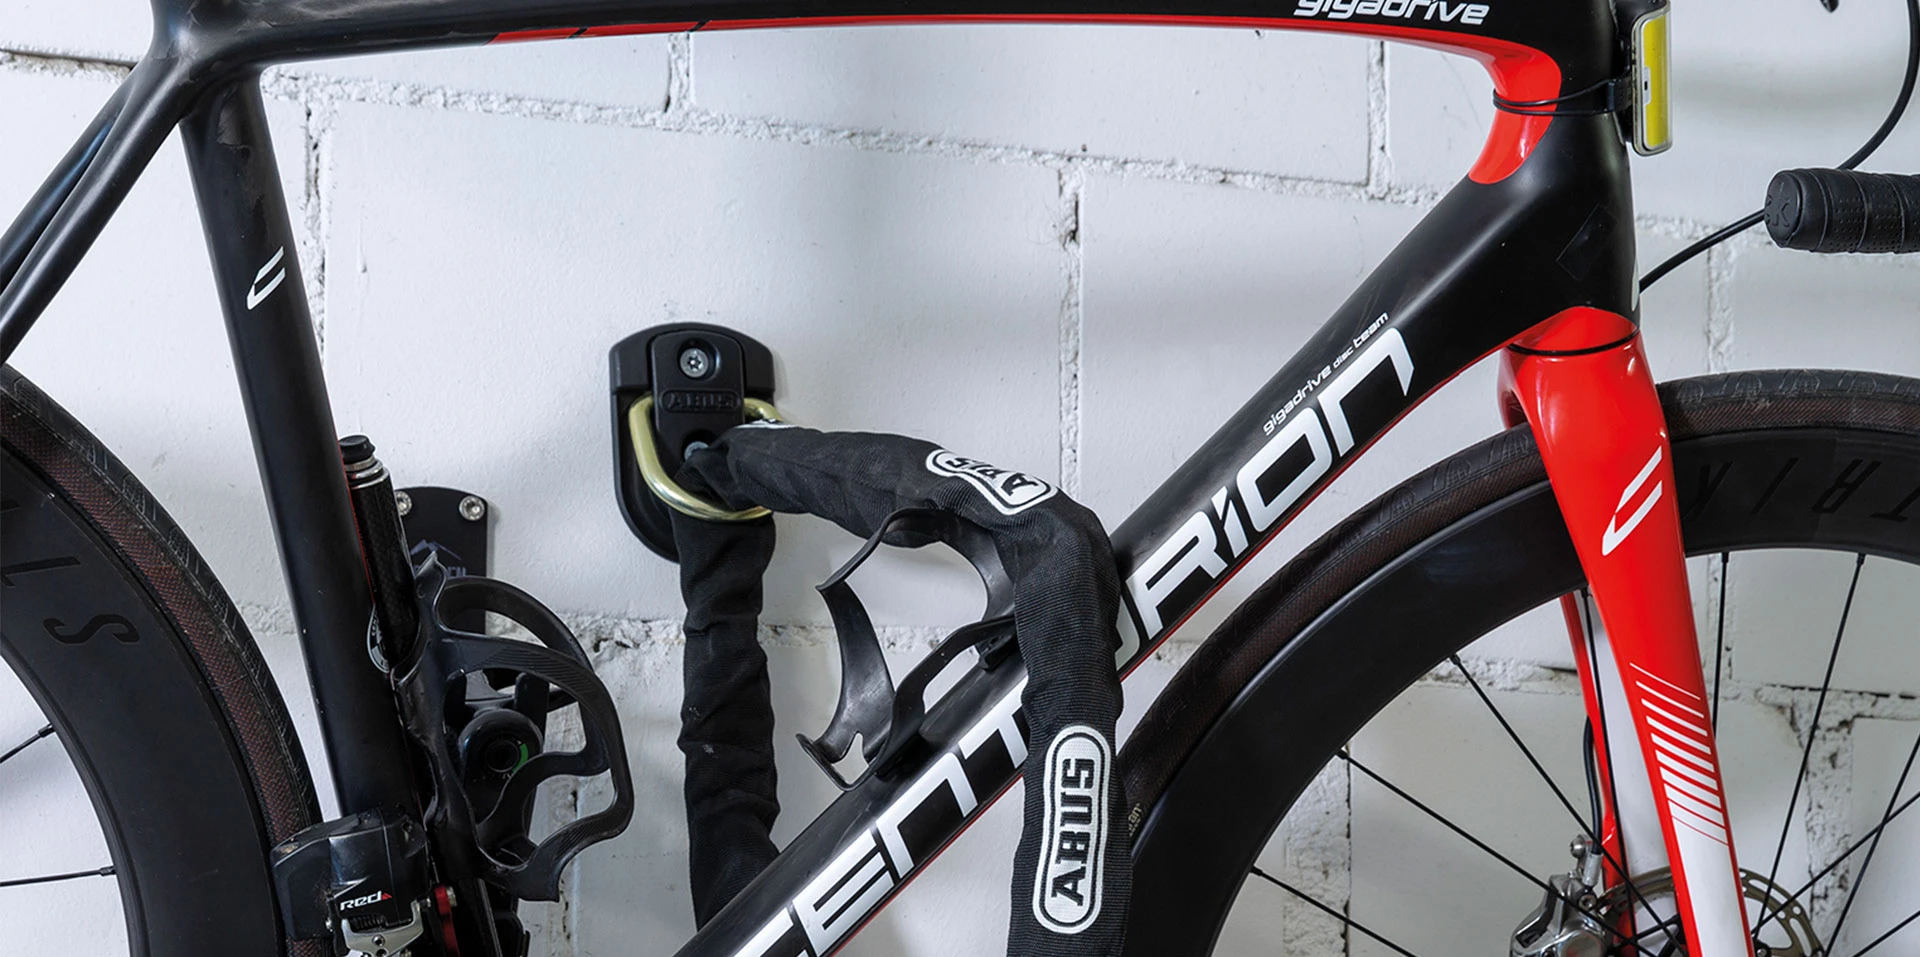 Antivols vélo double verrouillage : Renforcer la protection de son vélo